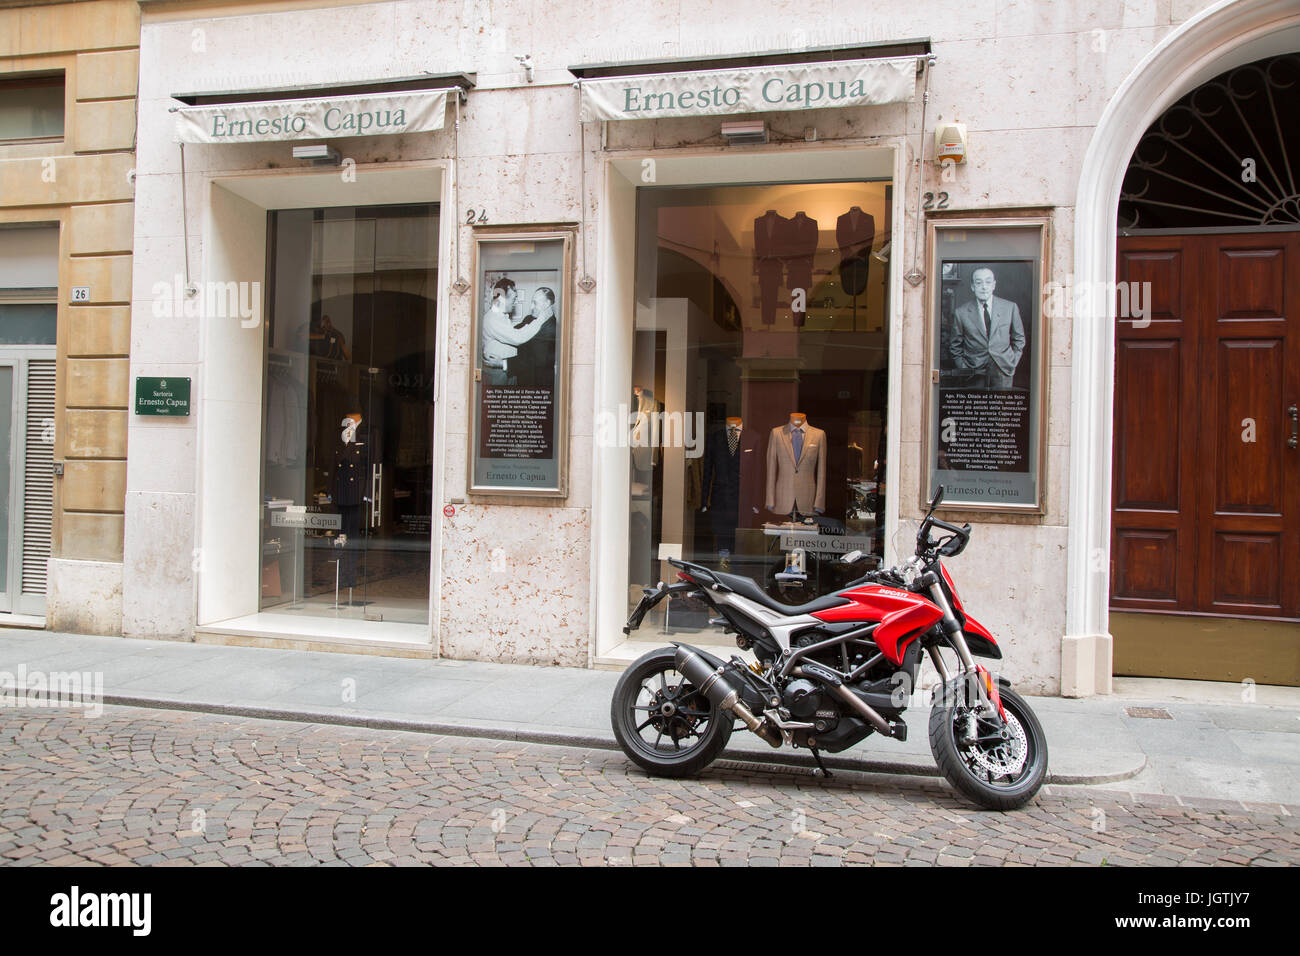 Ernesto Capua negozio di abbigliamento, San Giorgio Street, Modena, Italia  Foto stock - Alamy